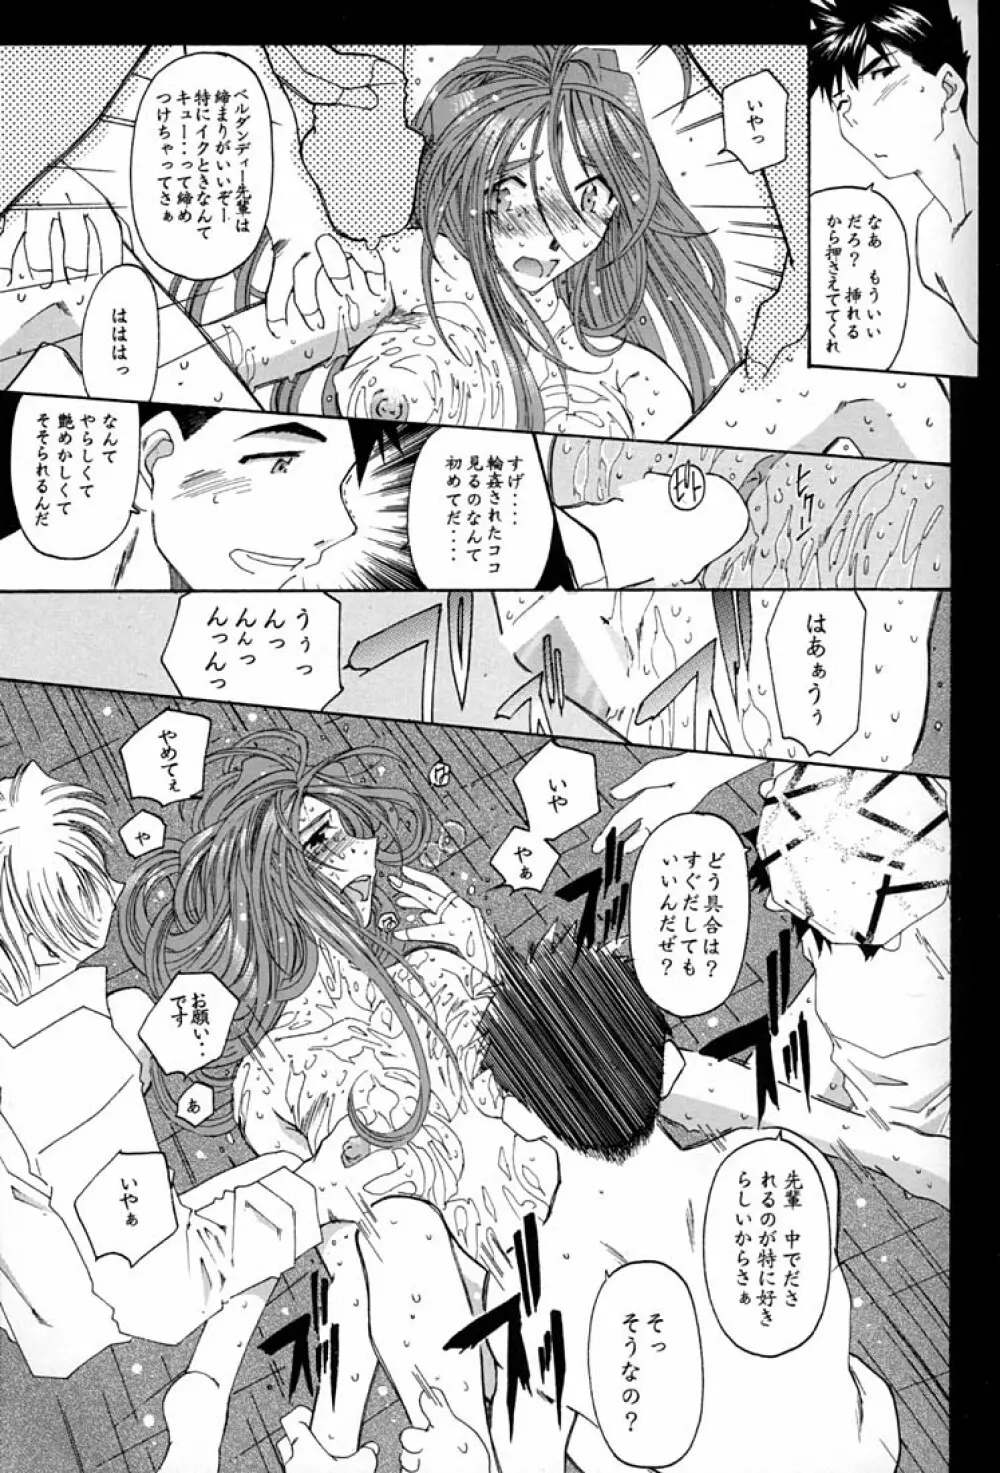 Fujishima Spirits 2 26ページ